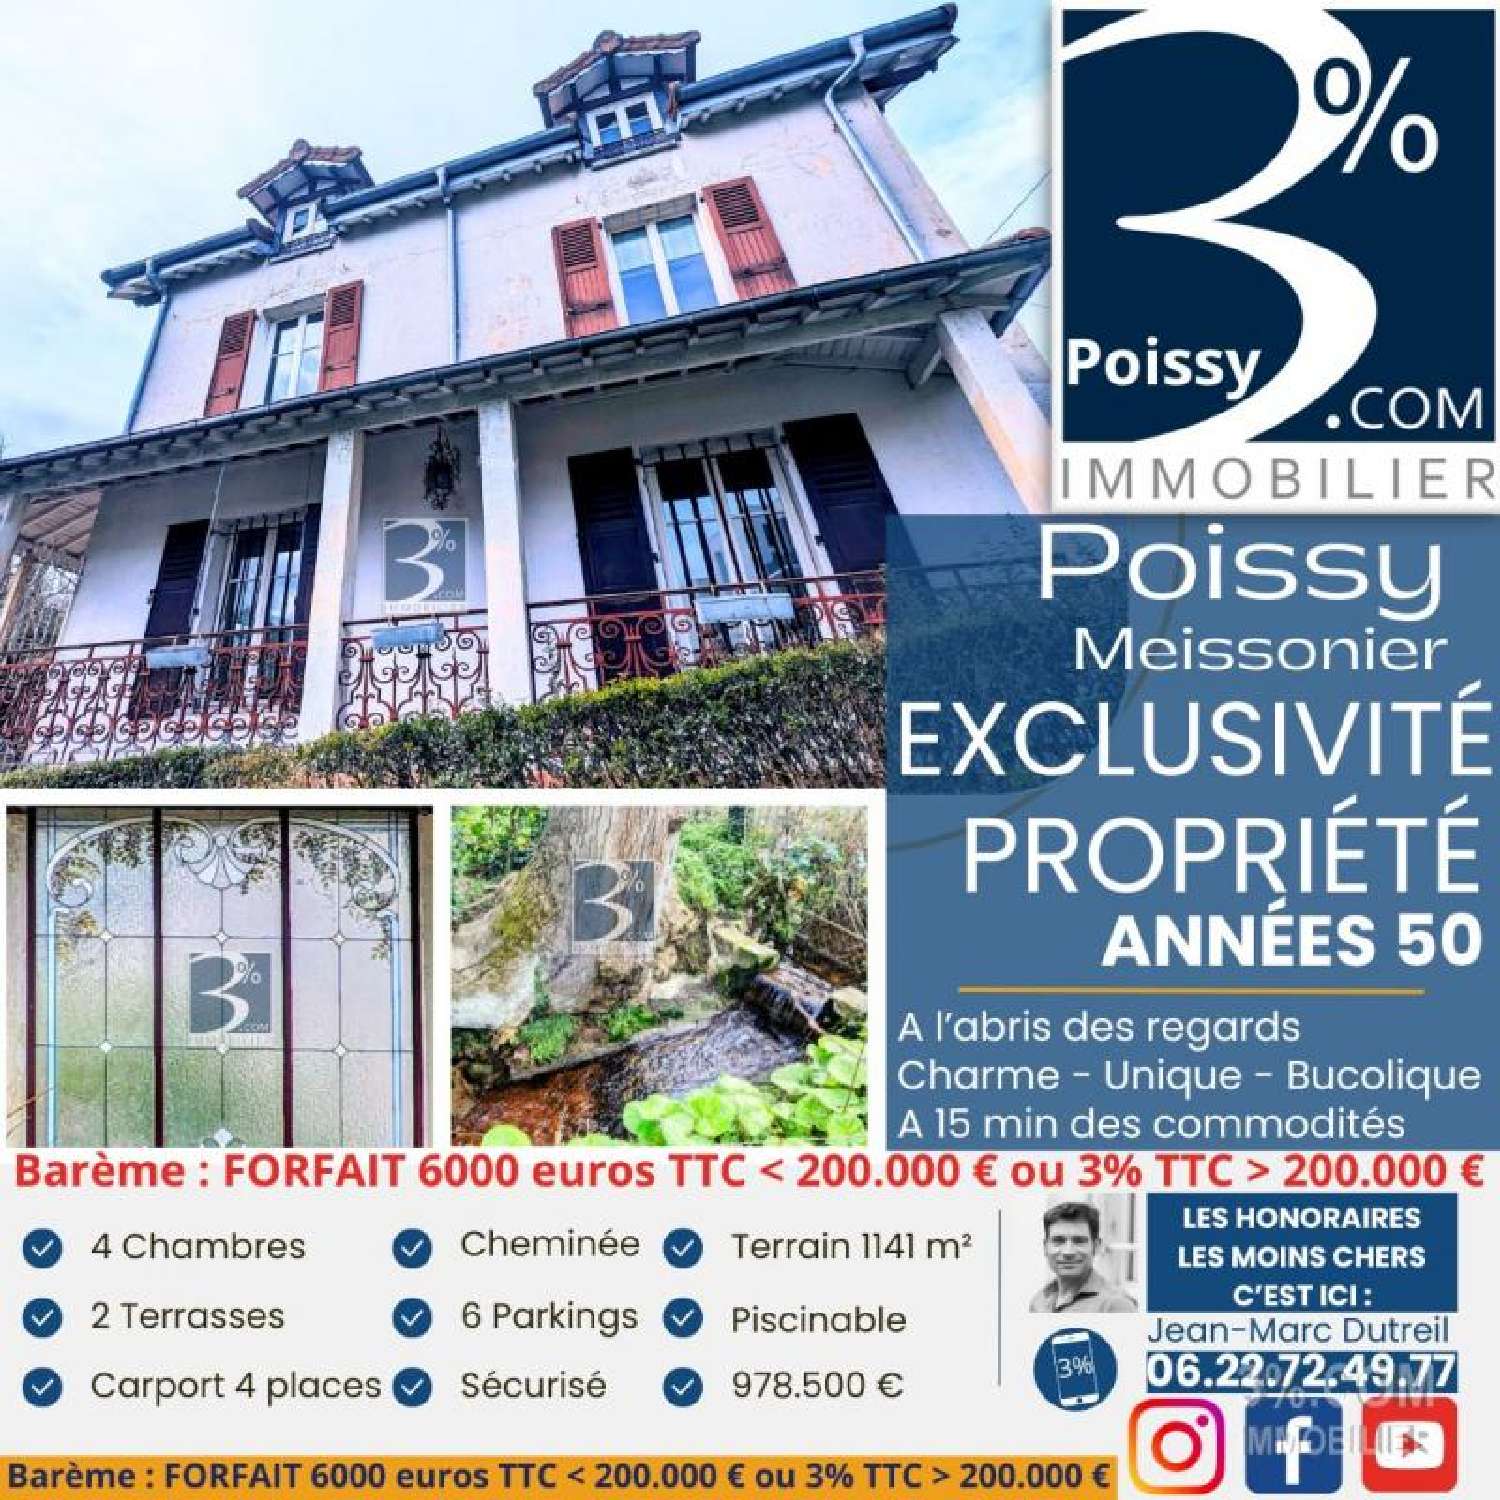 Poissy Yvelines Haus Bild 6850213